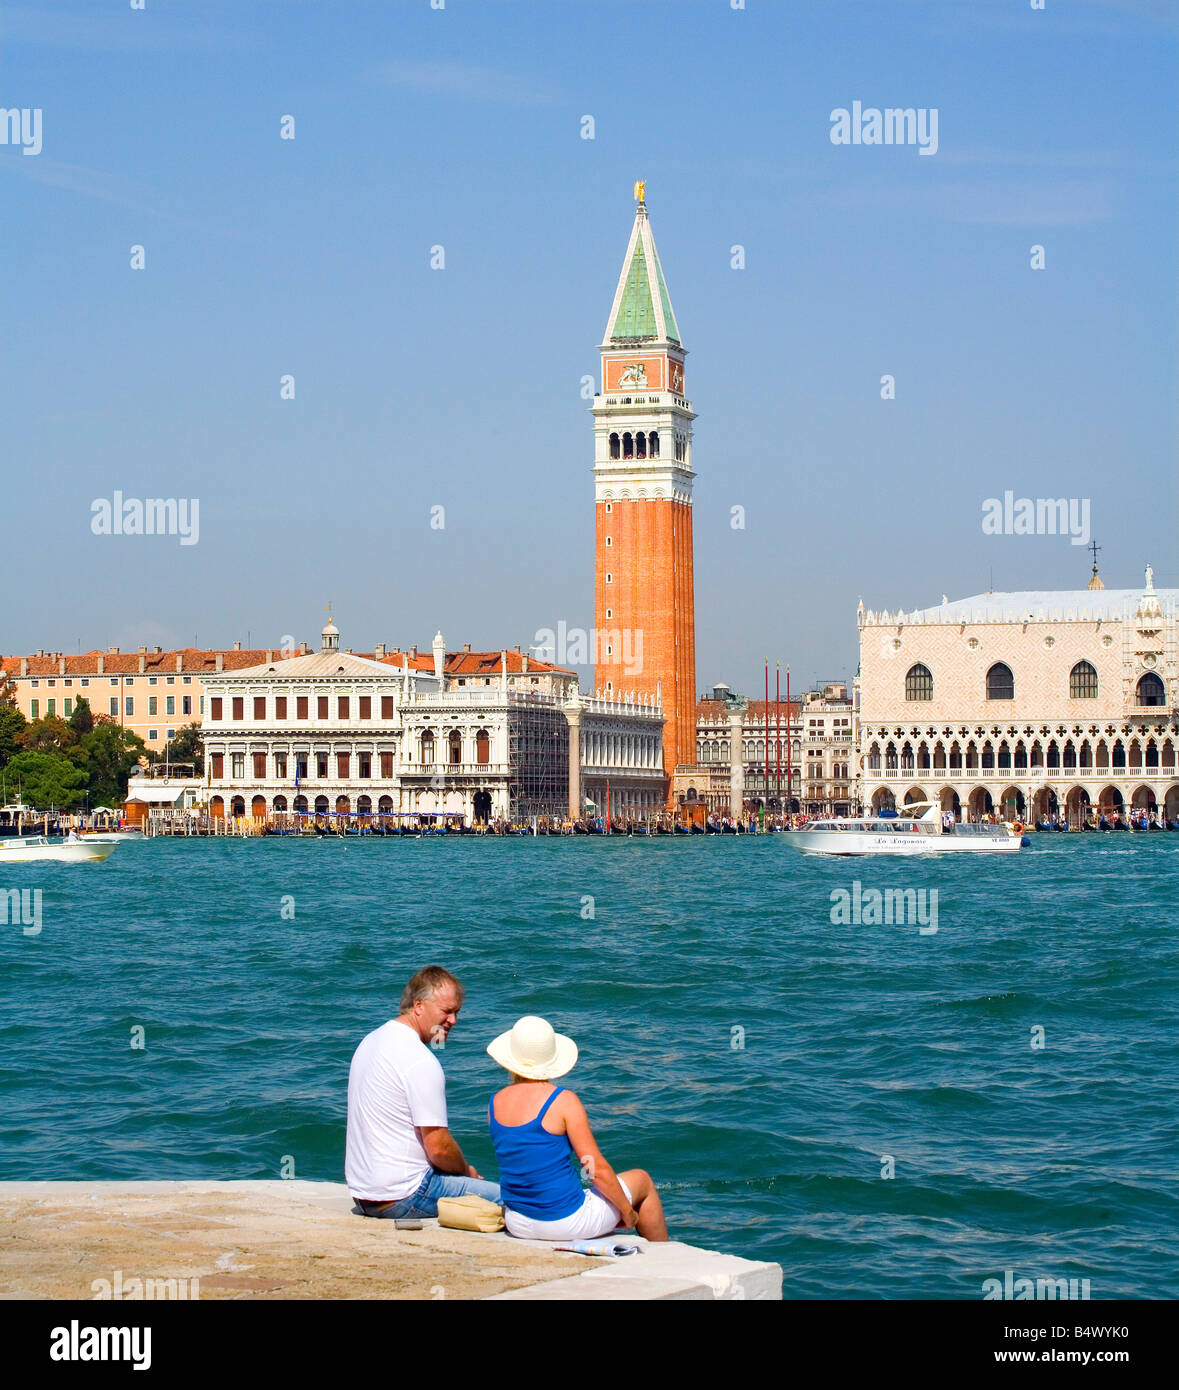 Palacio Ducal y el Campanile de la plaza de San Marcos Venecia Italia Foto de stock